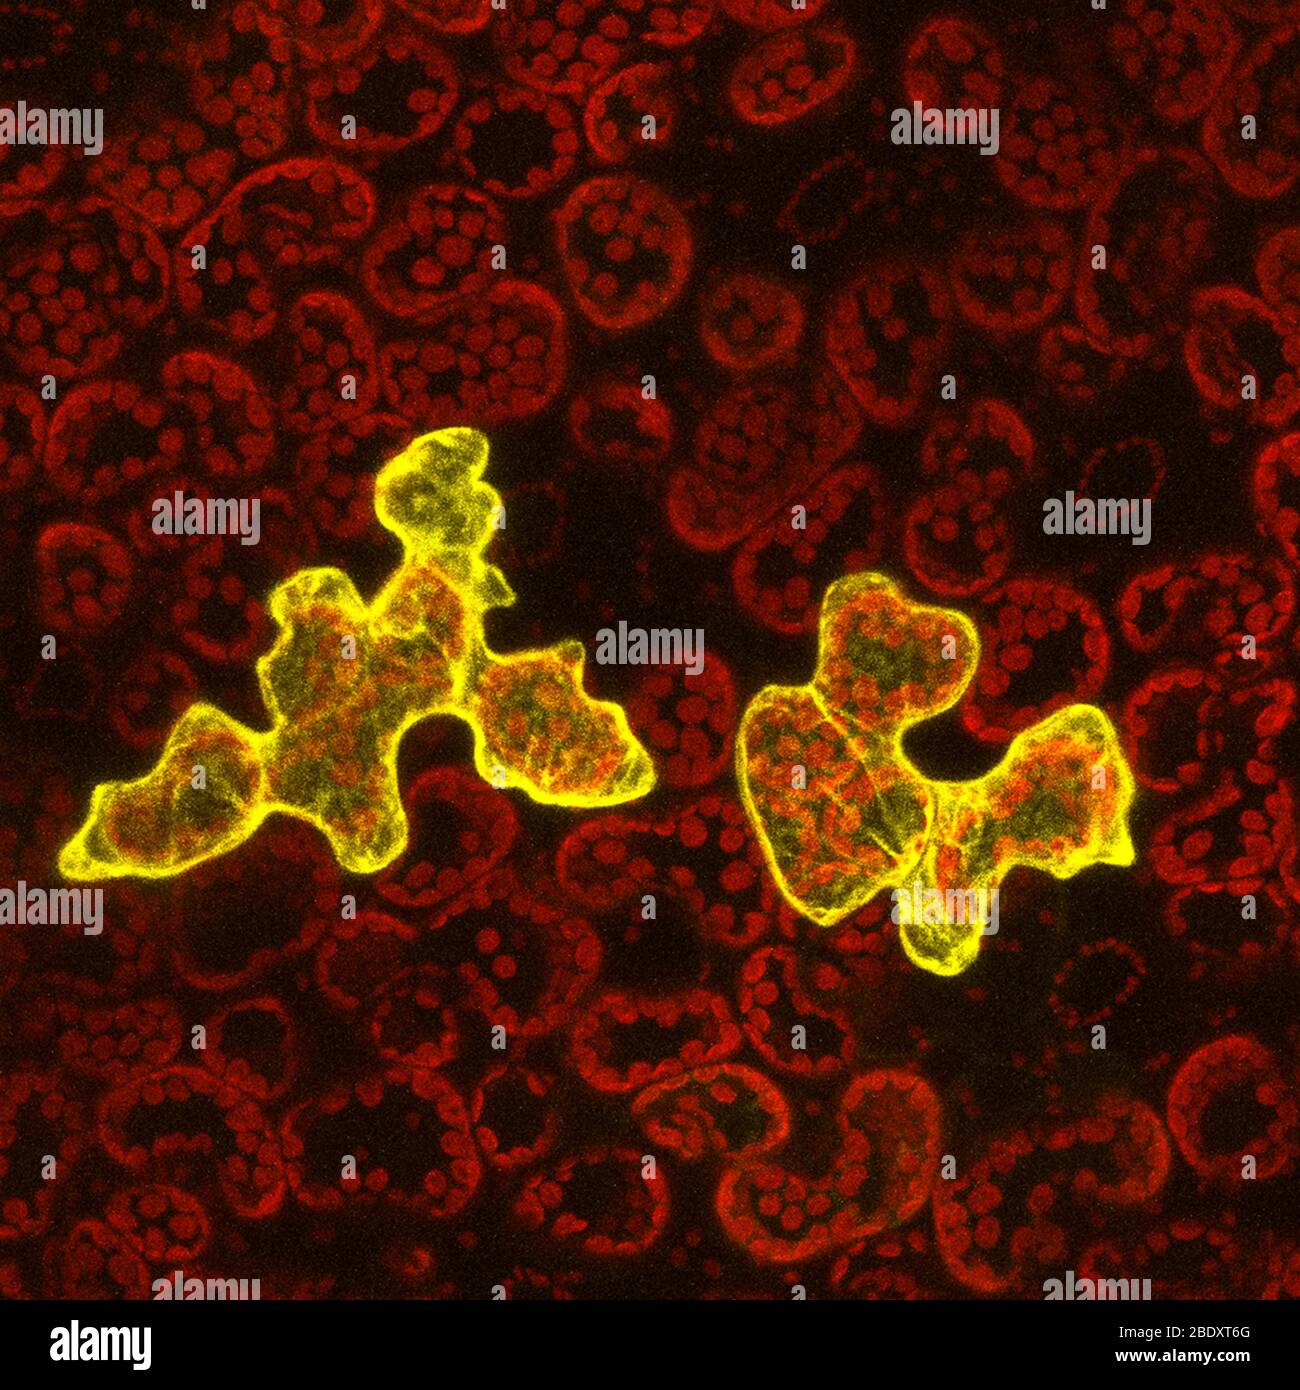 Pflanzen Sie epidermale Zellen mit viraler Infektion, Konfokaler Mikrograph Stockfoto